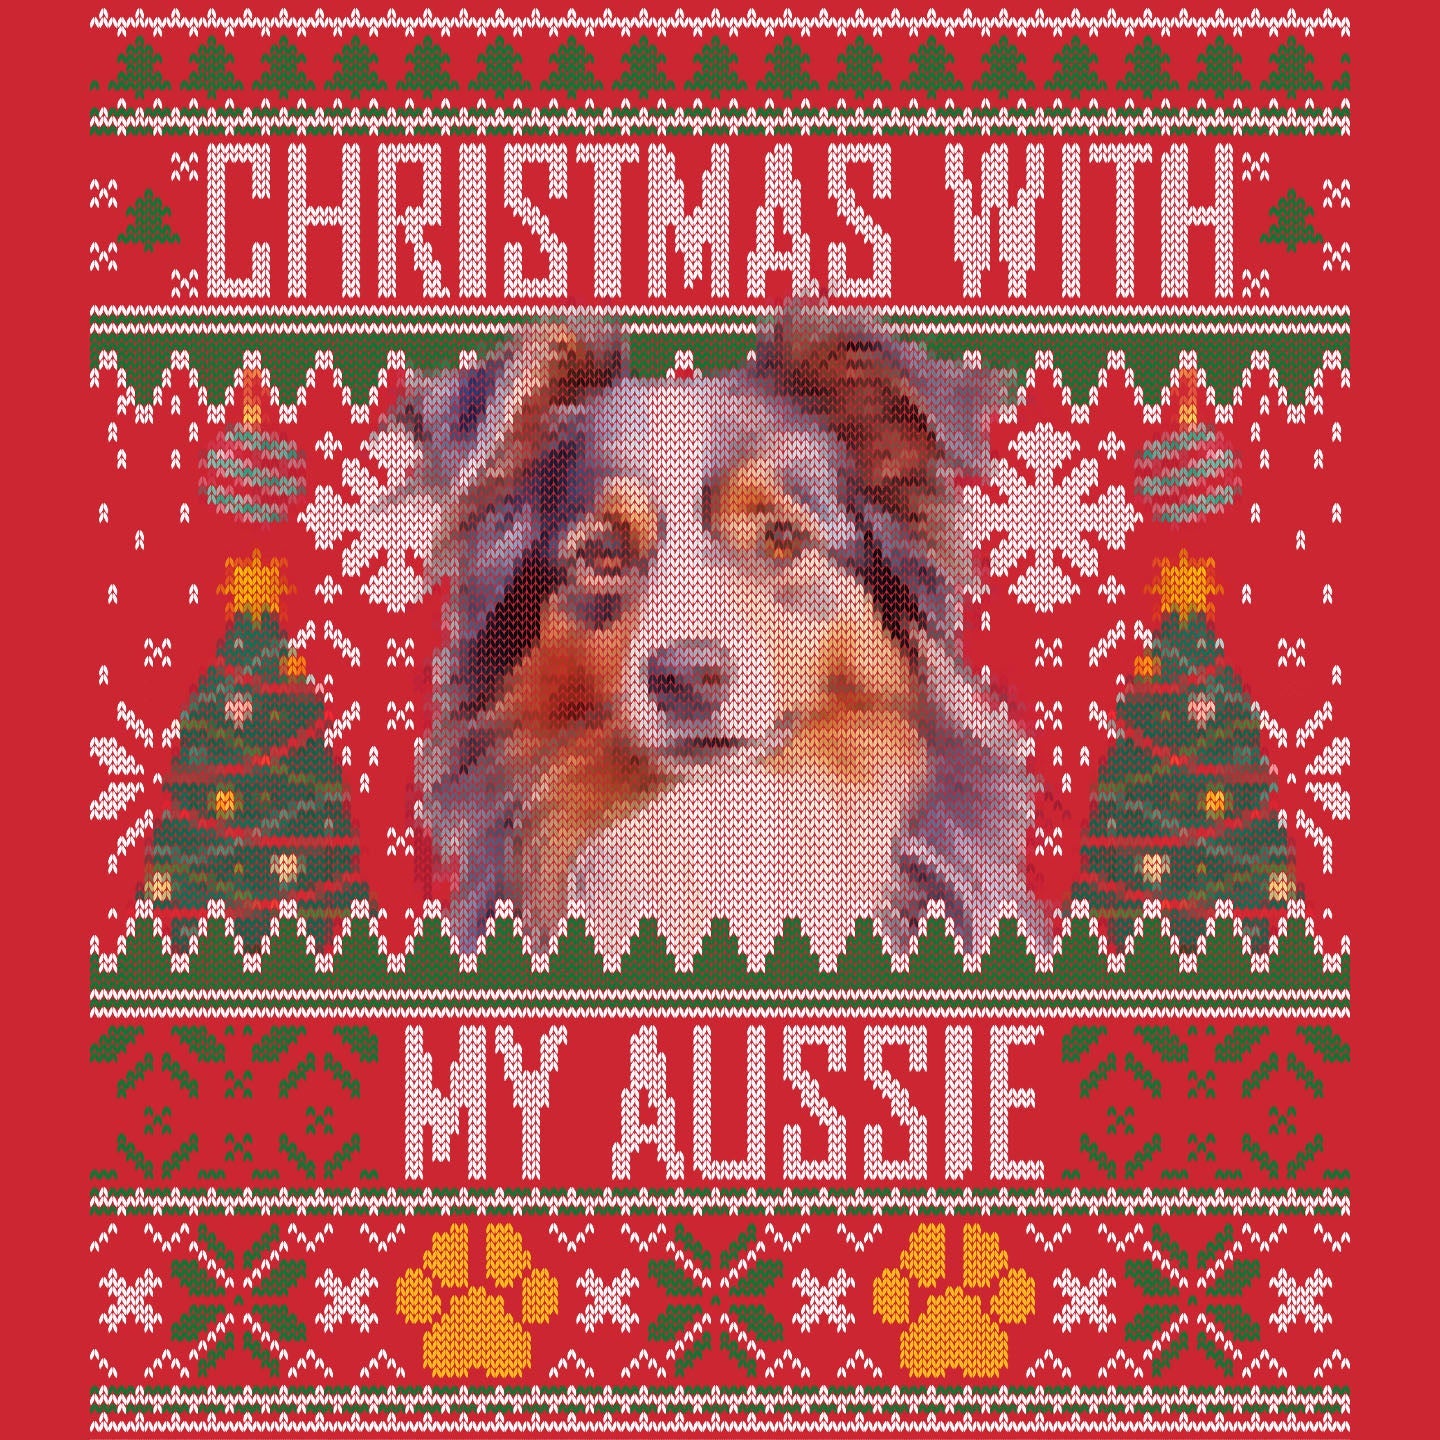 Ugly Sweater Christmas with My Australian Shepherd - Adult Unisex Long Sleeve T-Shirt